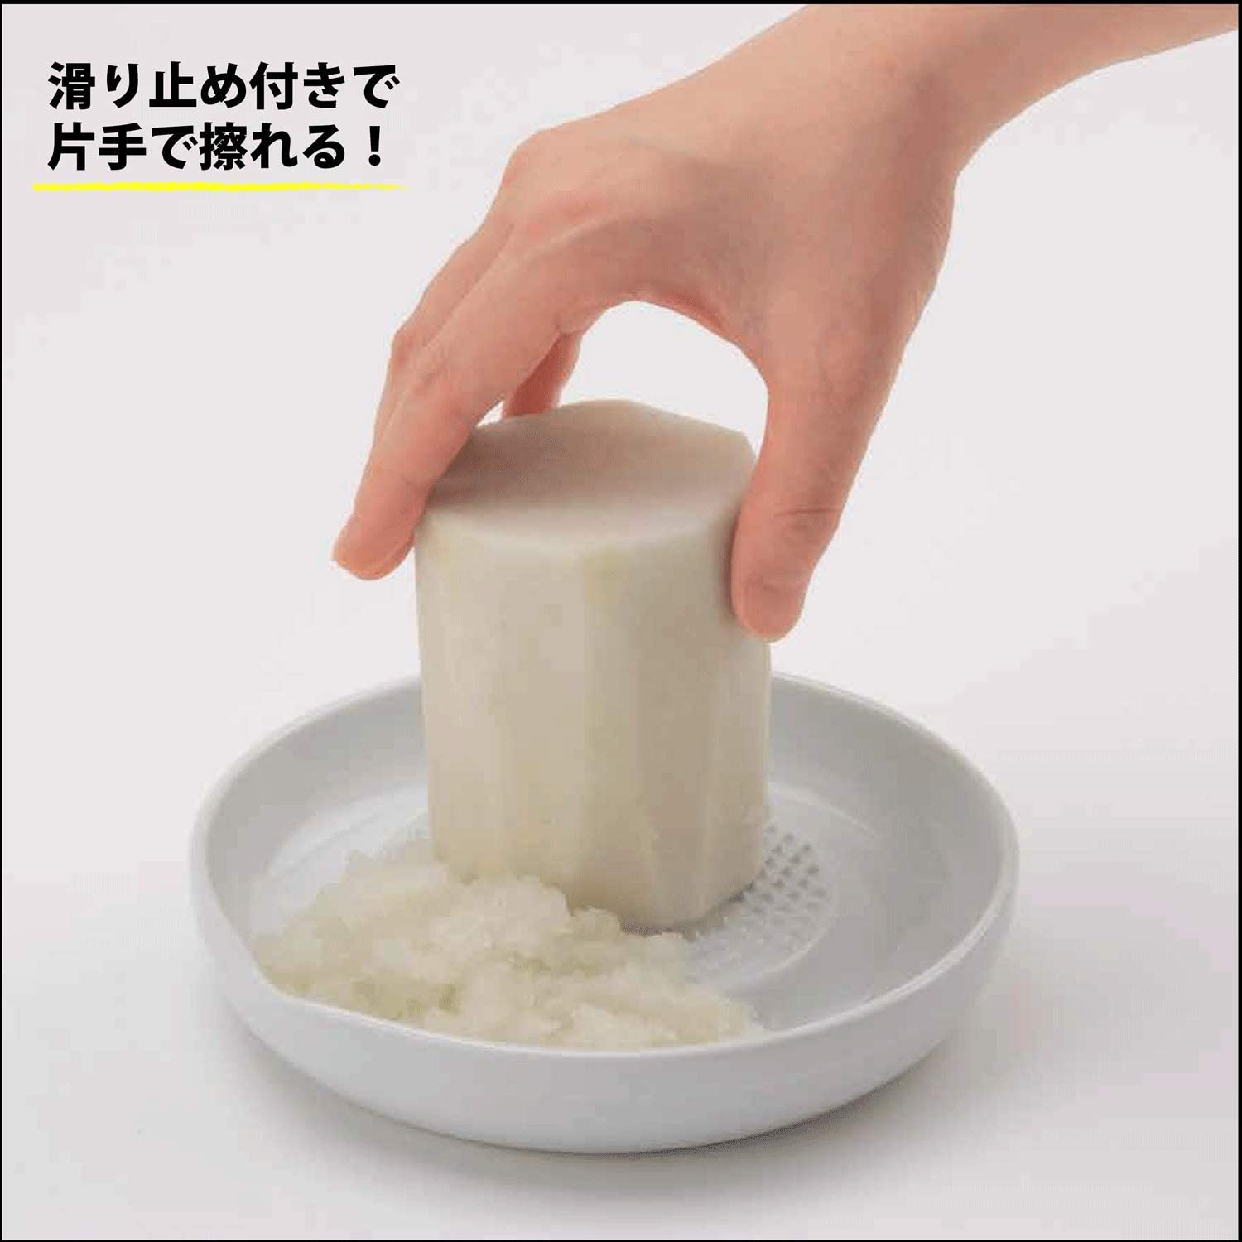 京セラ(KYOCERA) セラミックおろし器 CD-18(N)の商品画像サムネ5 